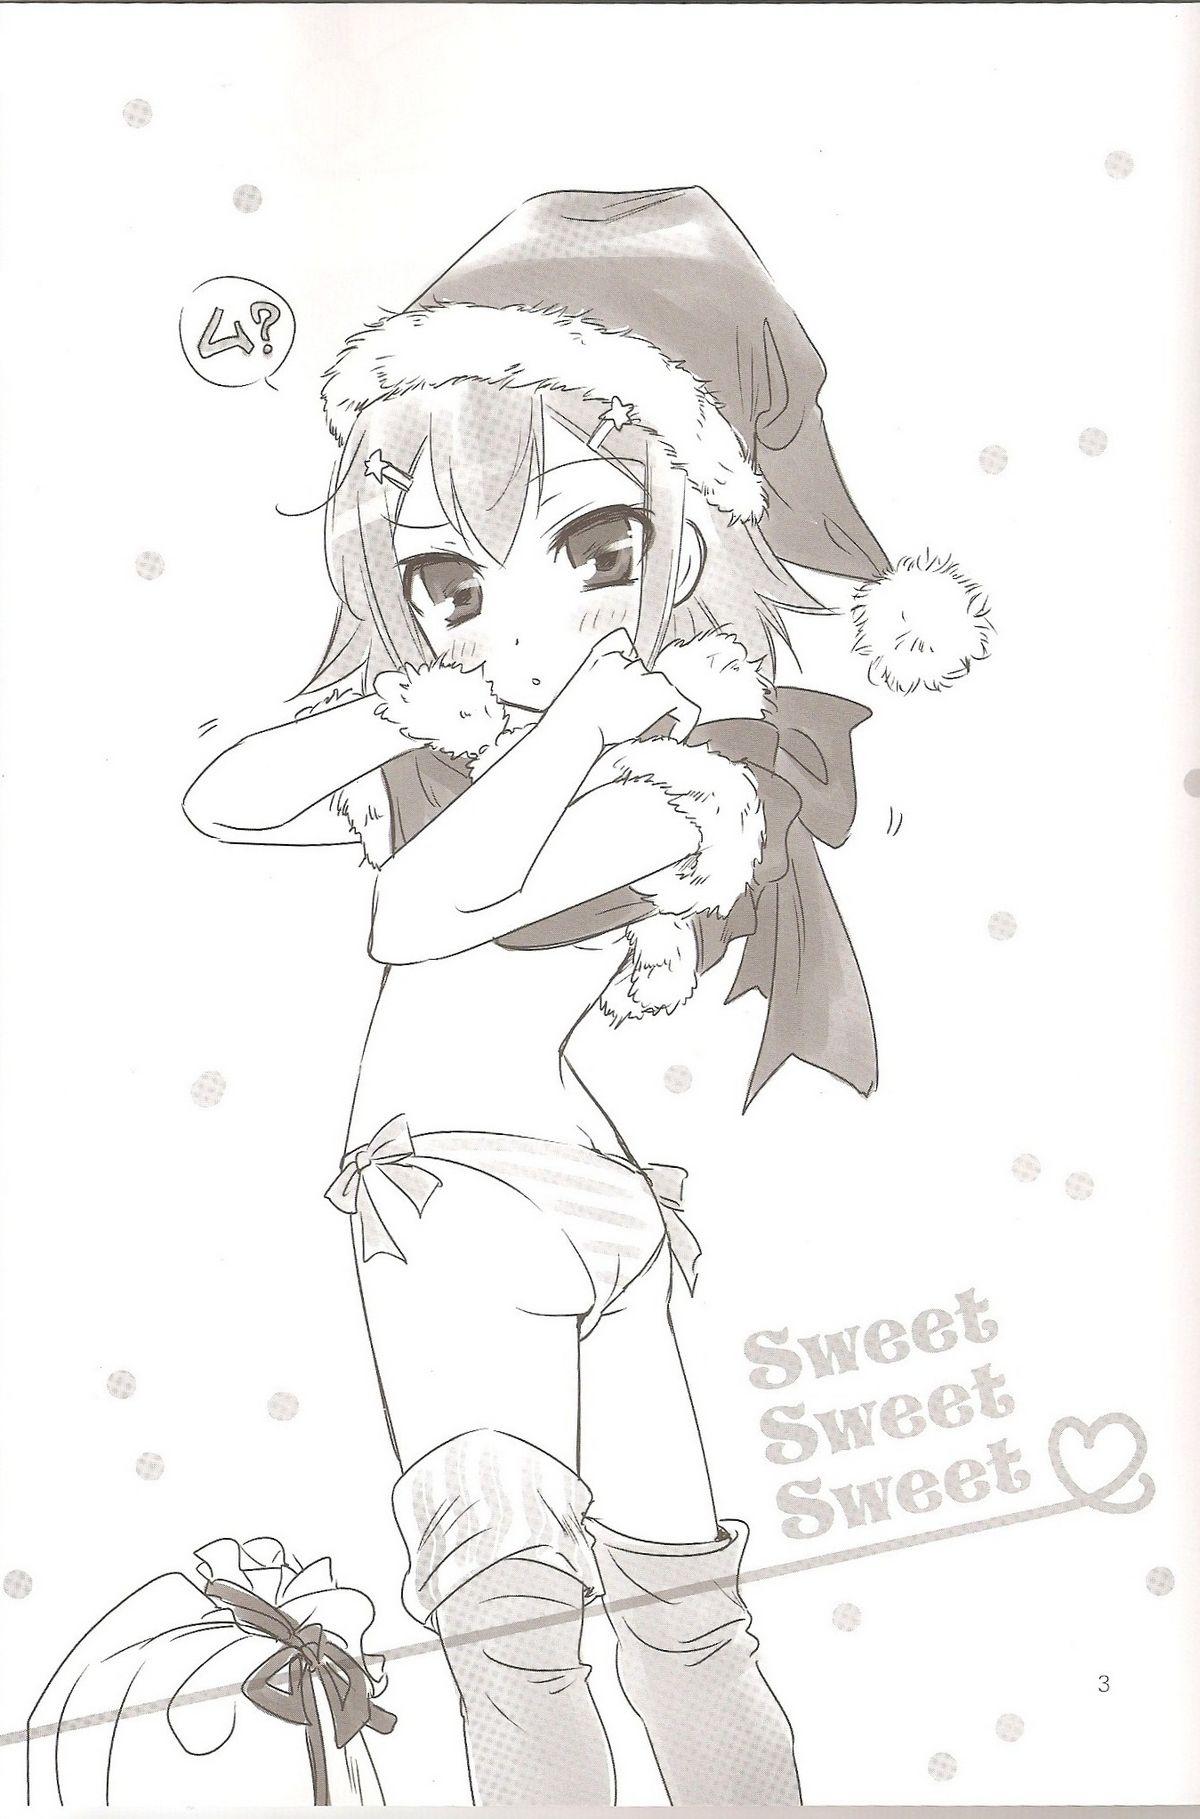 Sweet Sweet Sweet - BakaEro 5 1